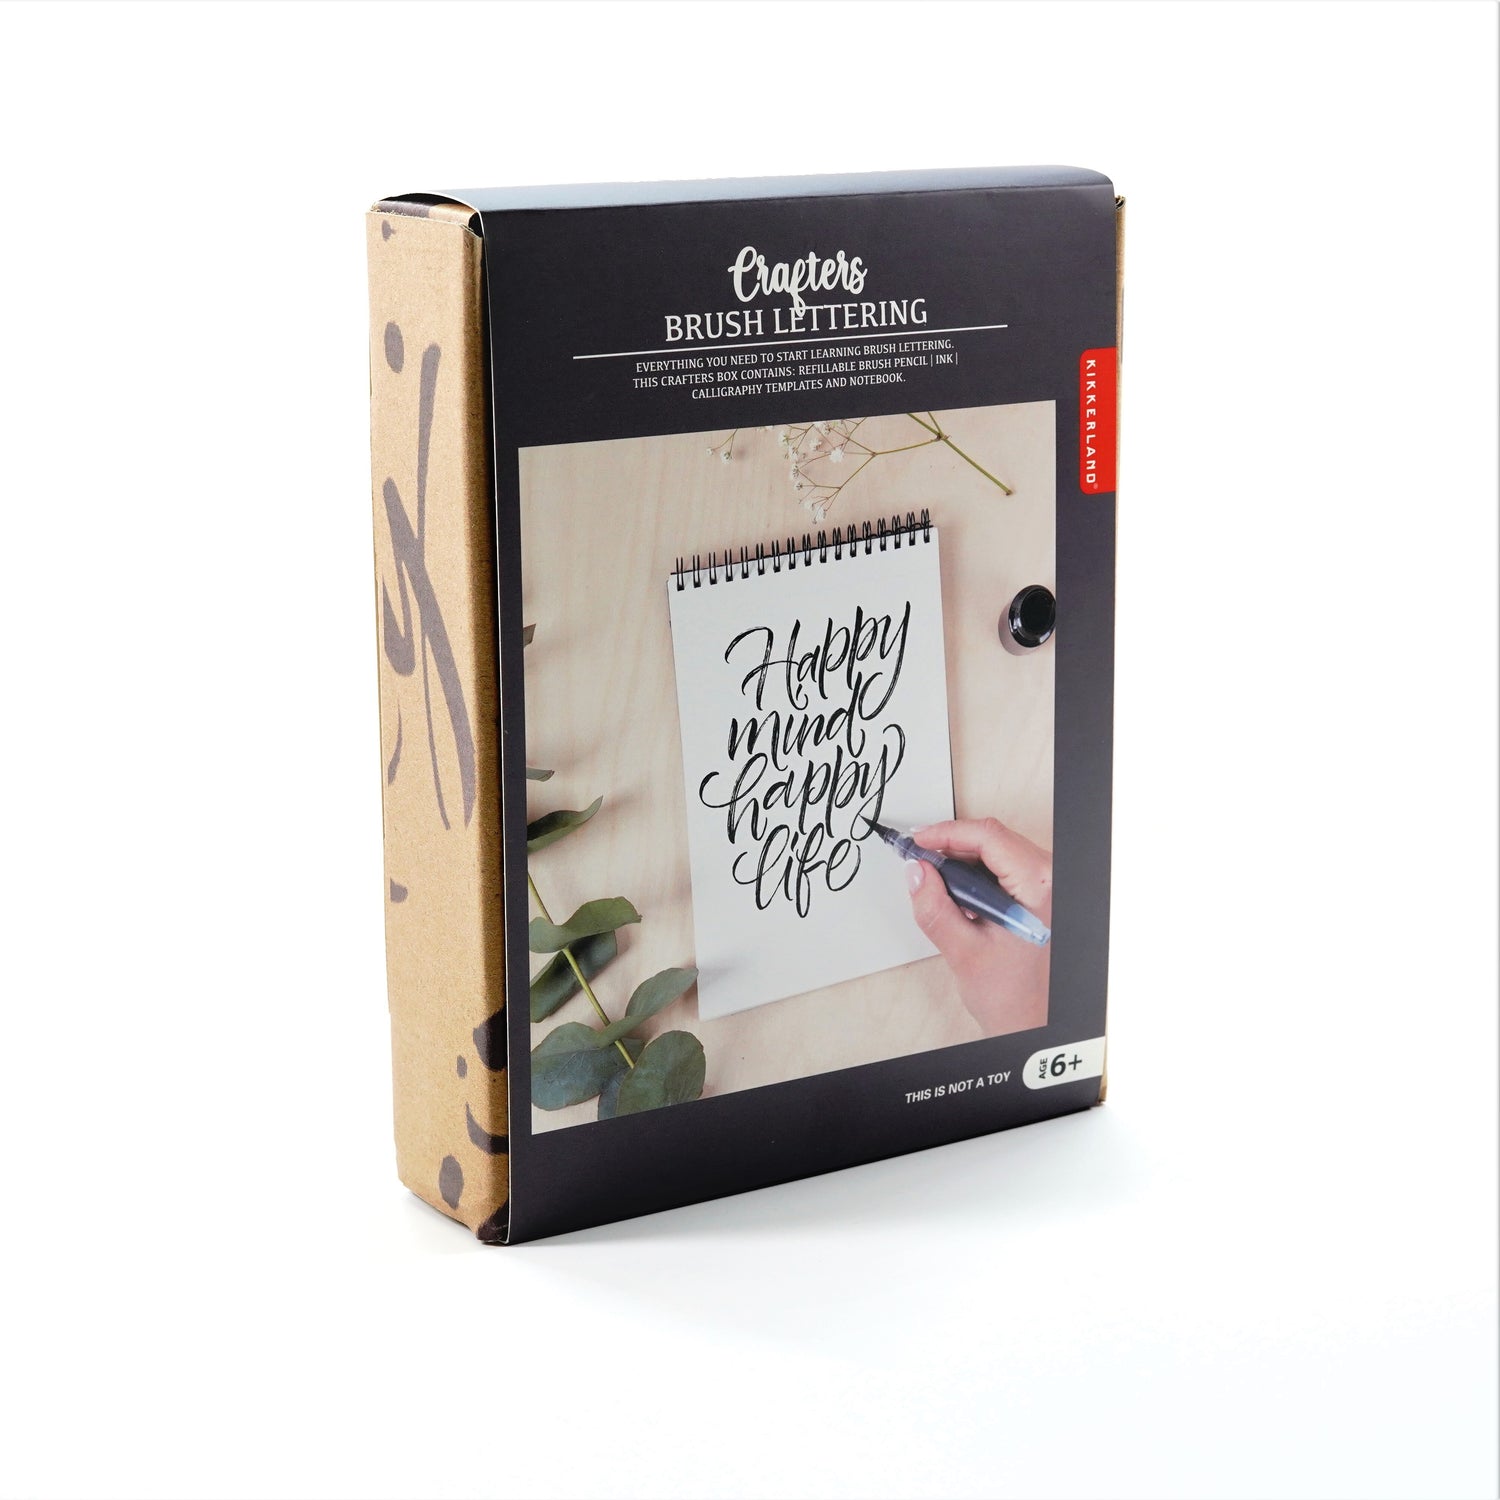 Crafters Brush Lettering Kit – Kikkerland Design Inc